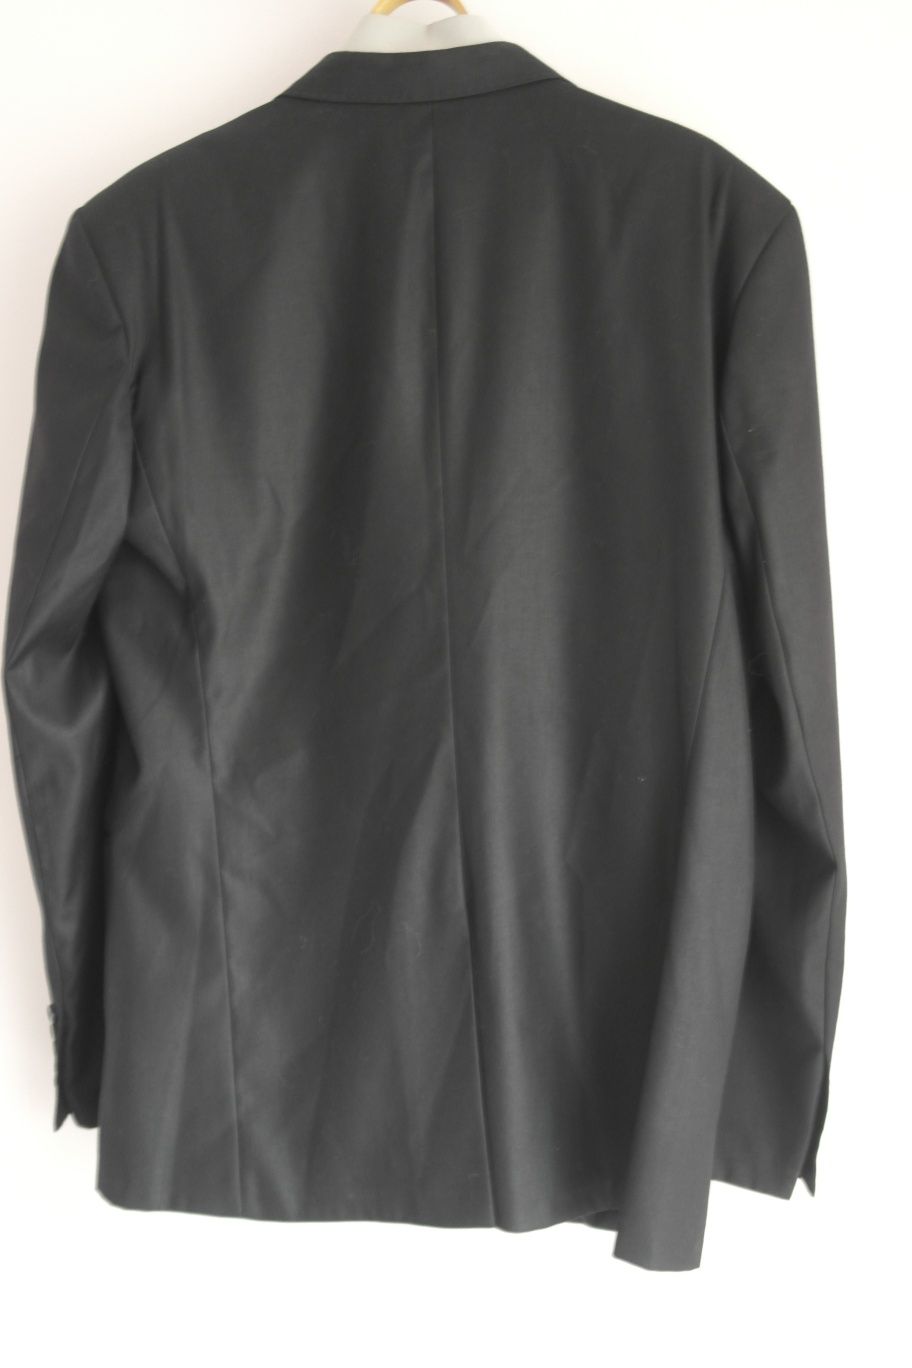 Пиджак мужской 50~52 размер 180 рост